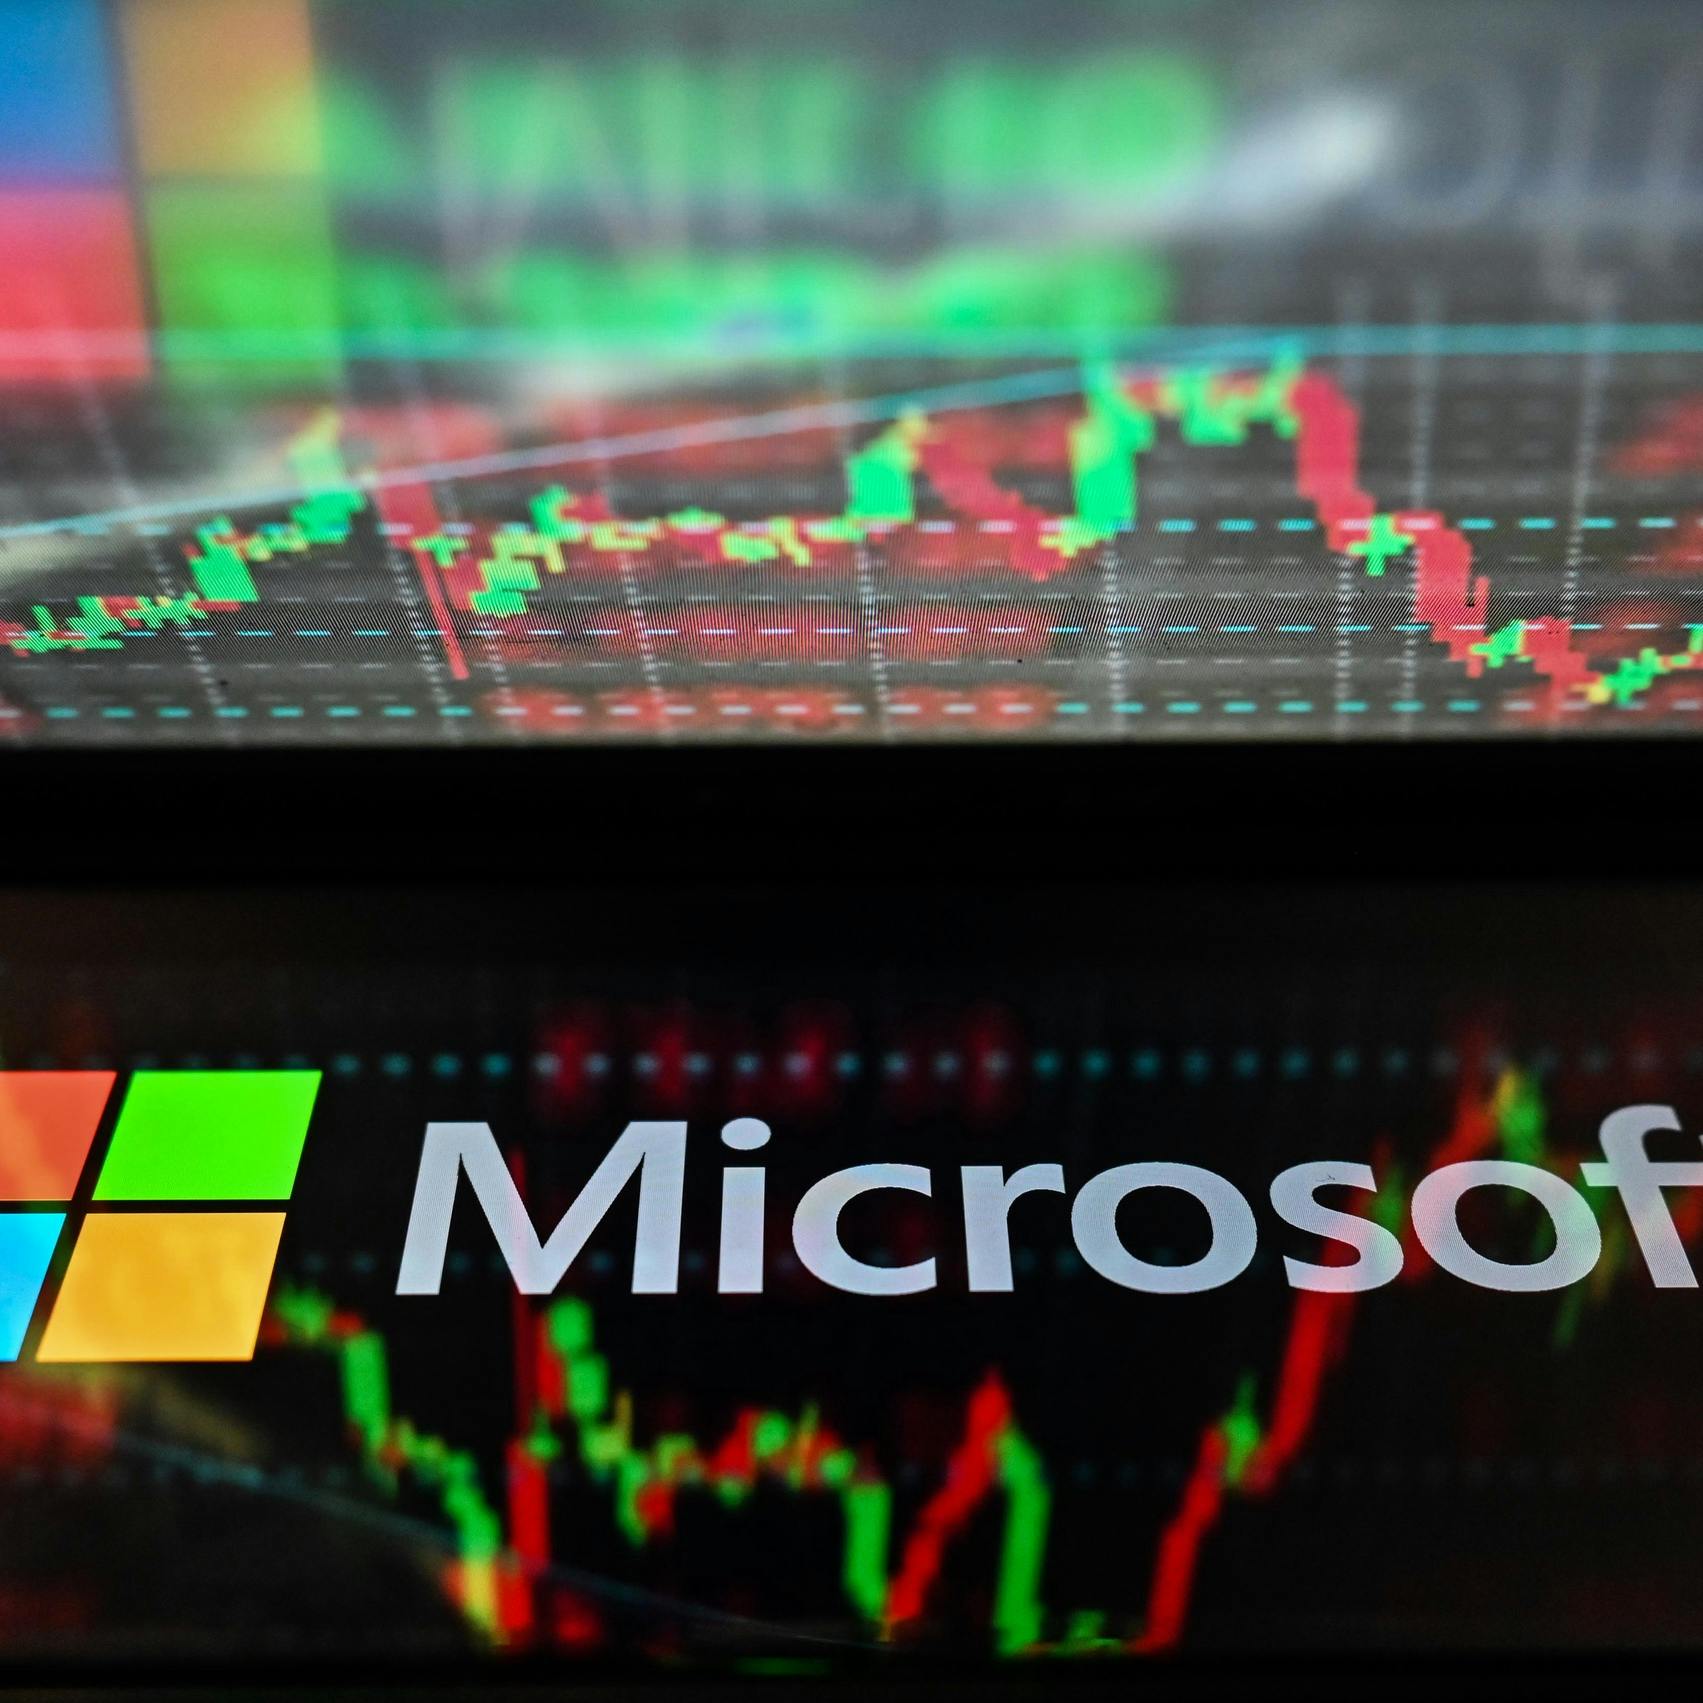 Beleggers kijken uit naar cijfers Microsoft en rest techsector